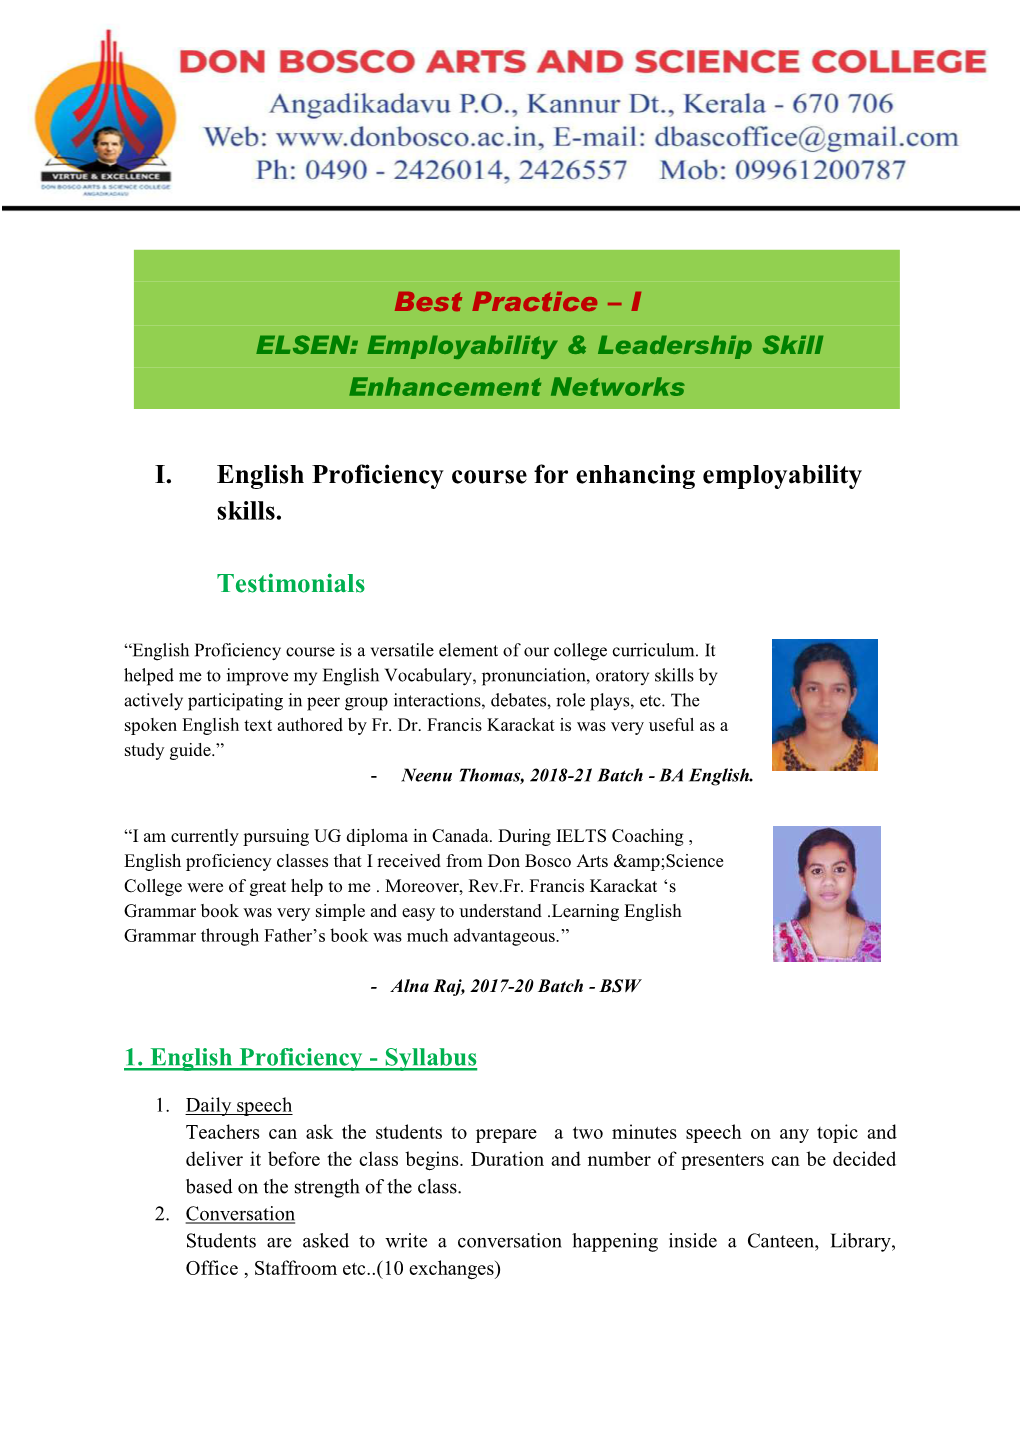 I I. English Proficiency Course for Enhancing Employability Skills